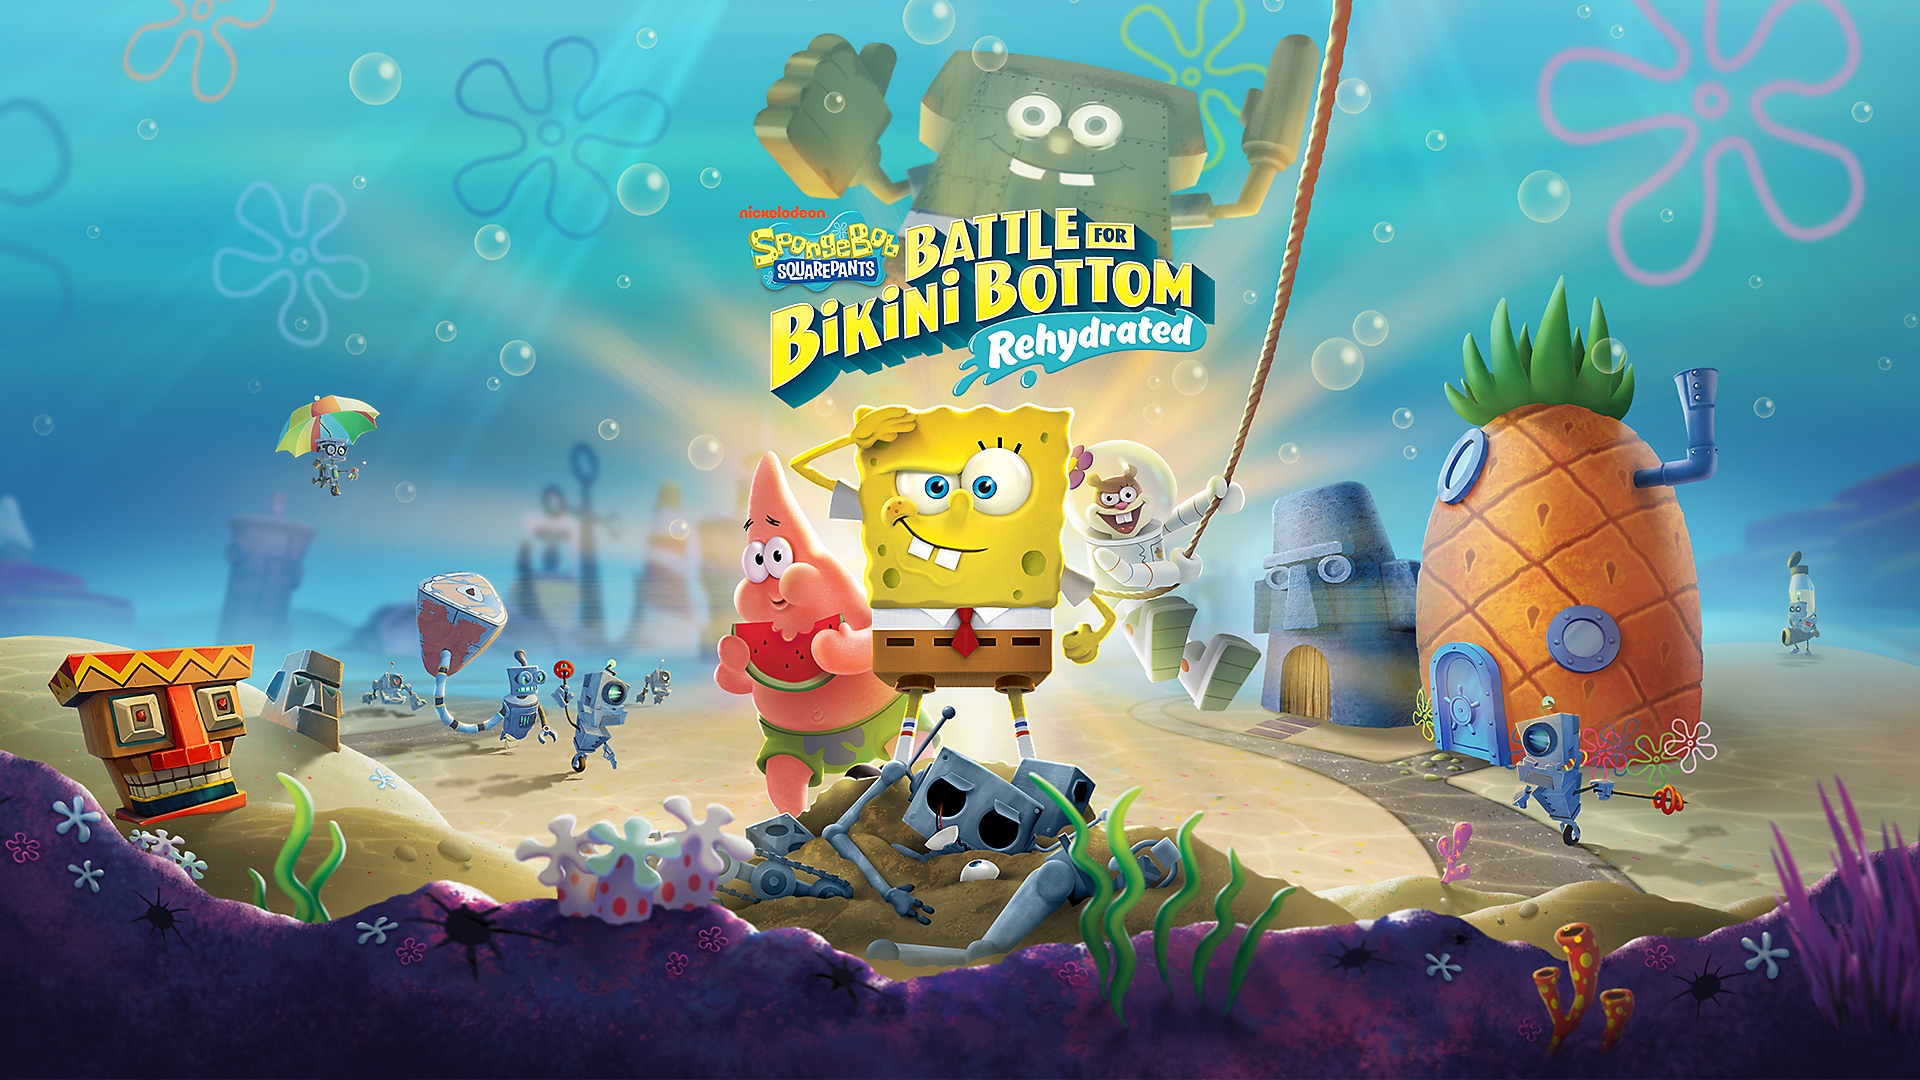 SpongeBob grüßt, während Patrick eine Ananas isst in Bikini Bottom für SpongeBob Schwammkopf: Battle for Bikini Bottom – Rehydrated auf PS4